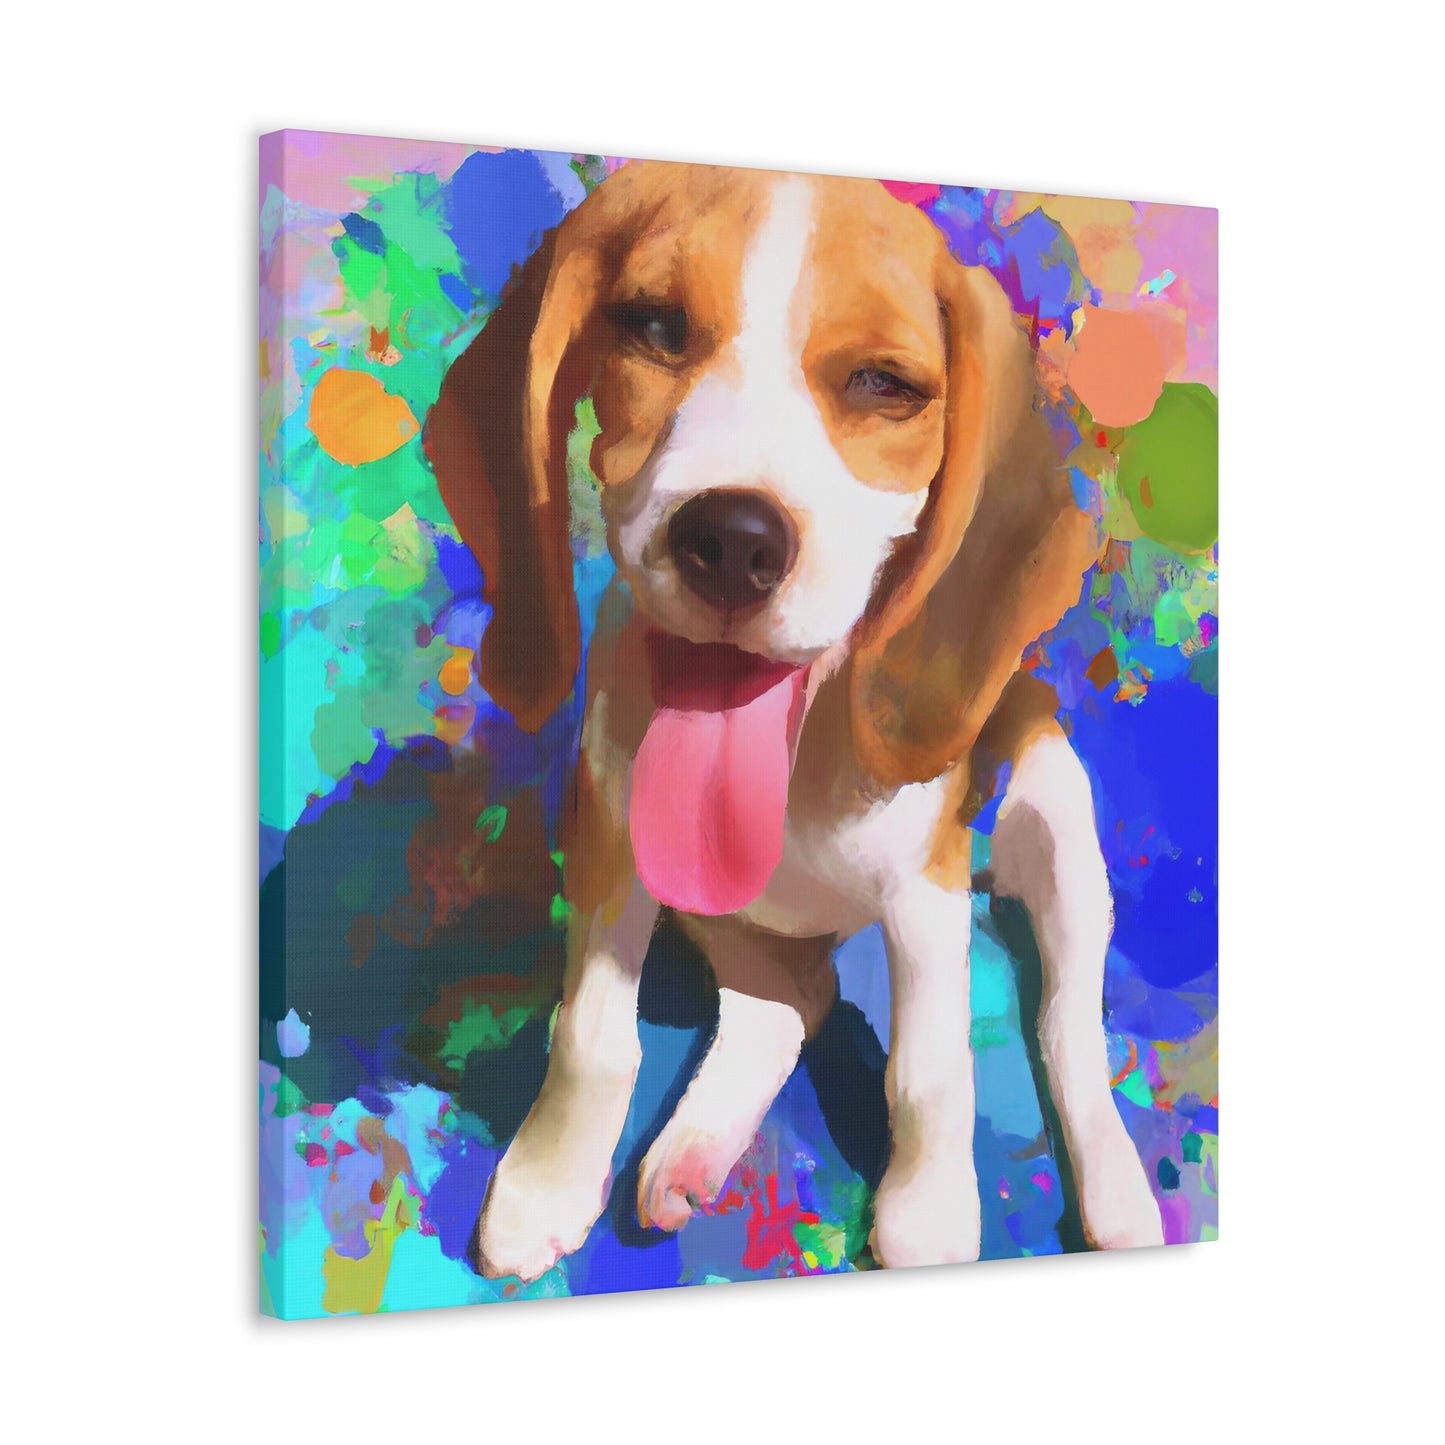 Prince/Princess Delana of the Van Gheyns. - Beagle Puppy - Canvas